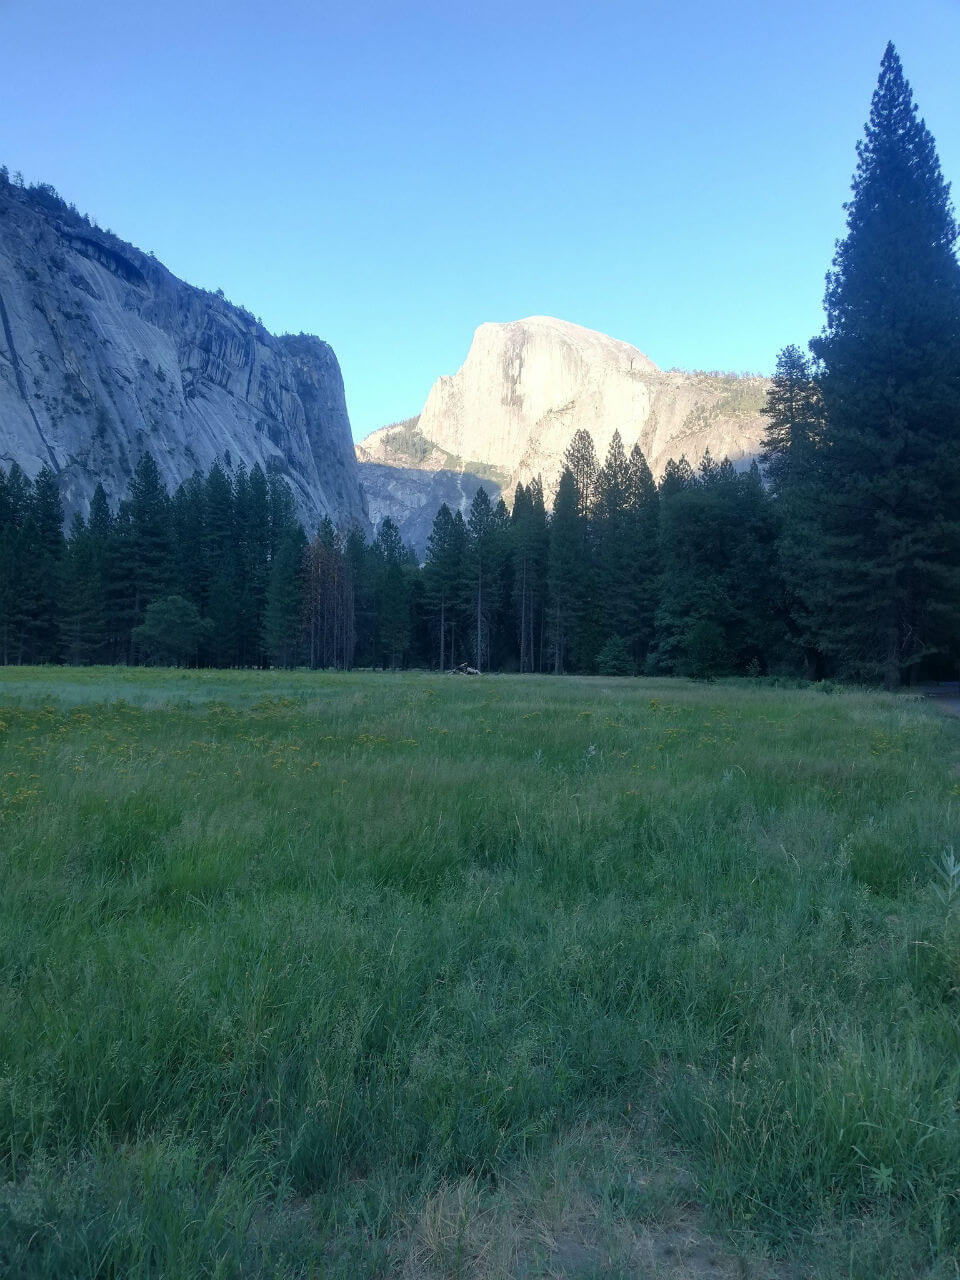 シエラ通信 2018 no.1 【Yosemite Valley】